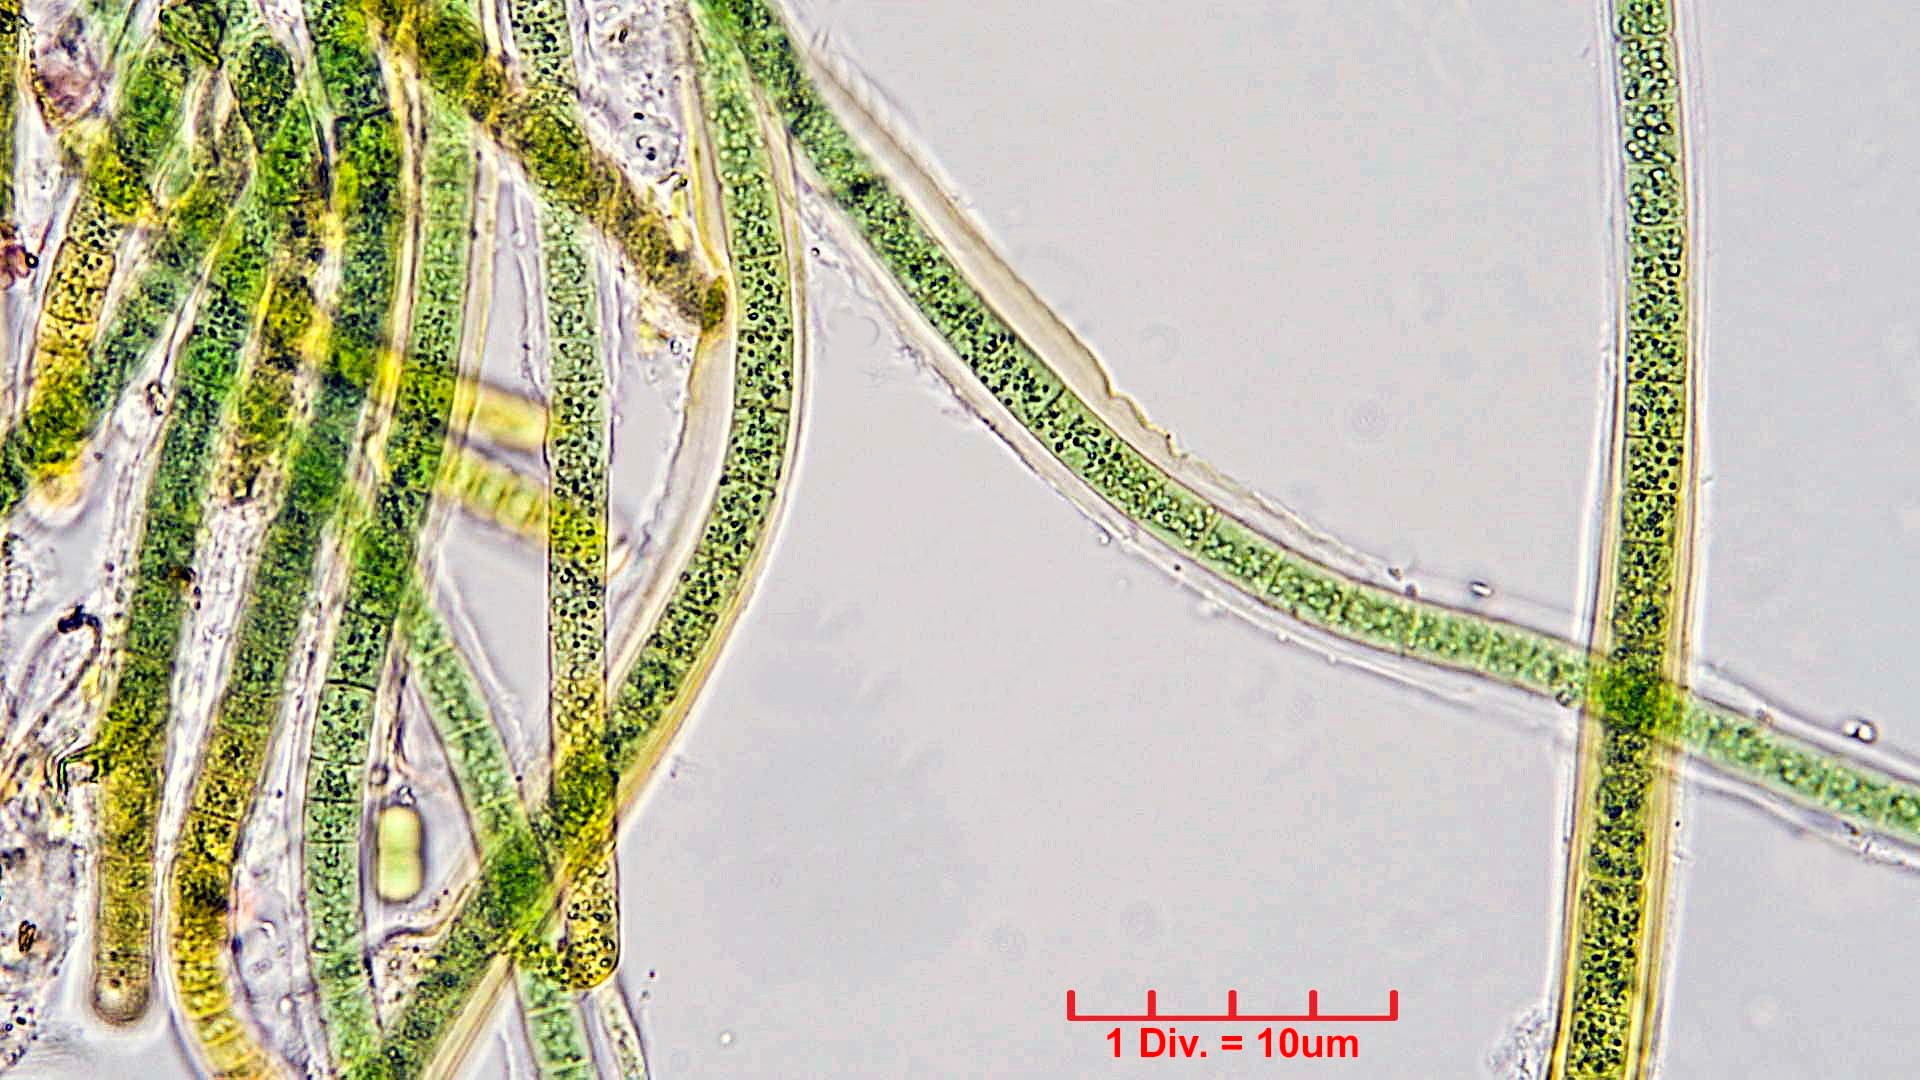 ./Cyanobacteria/Nostocales/Tolypothrichaceae/Tolypothrix/calcarata/tolypothrix-calcarata-319.jpg